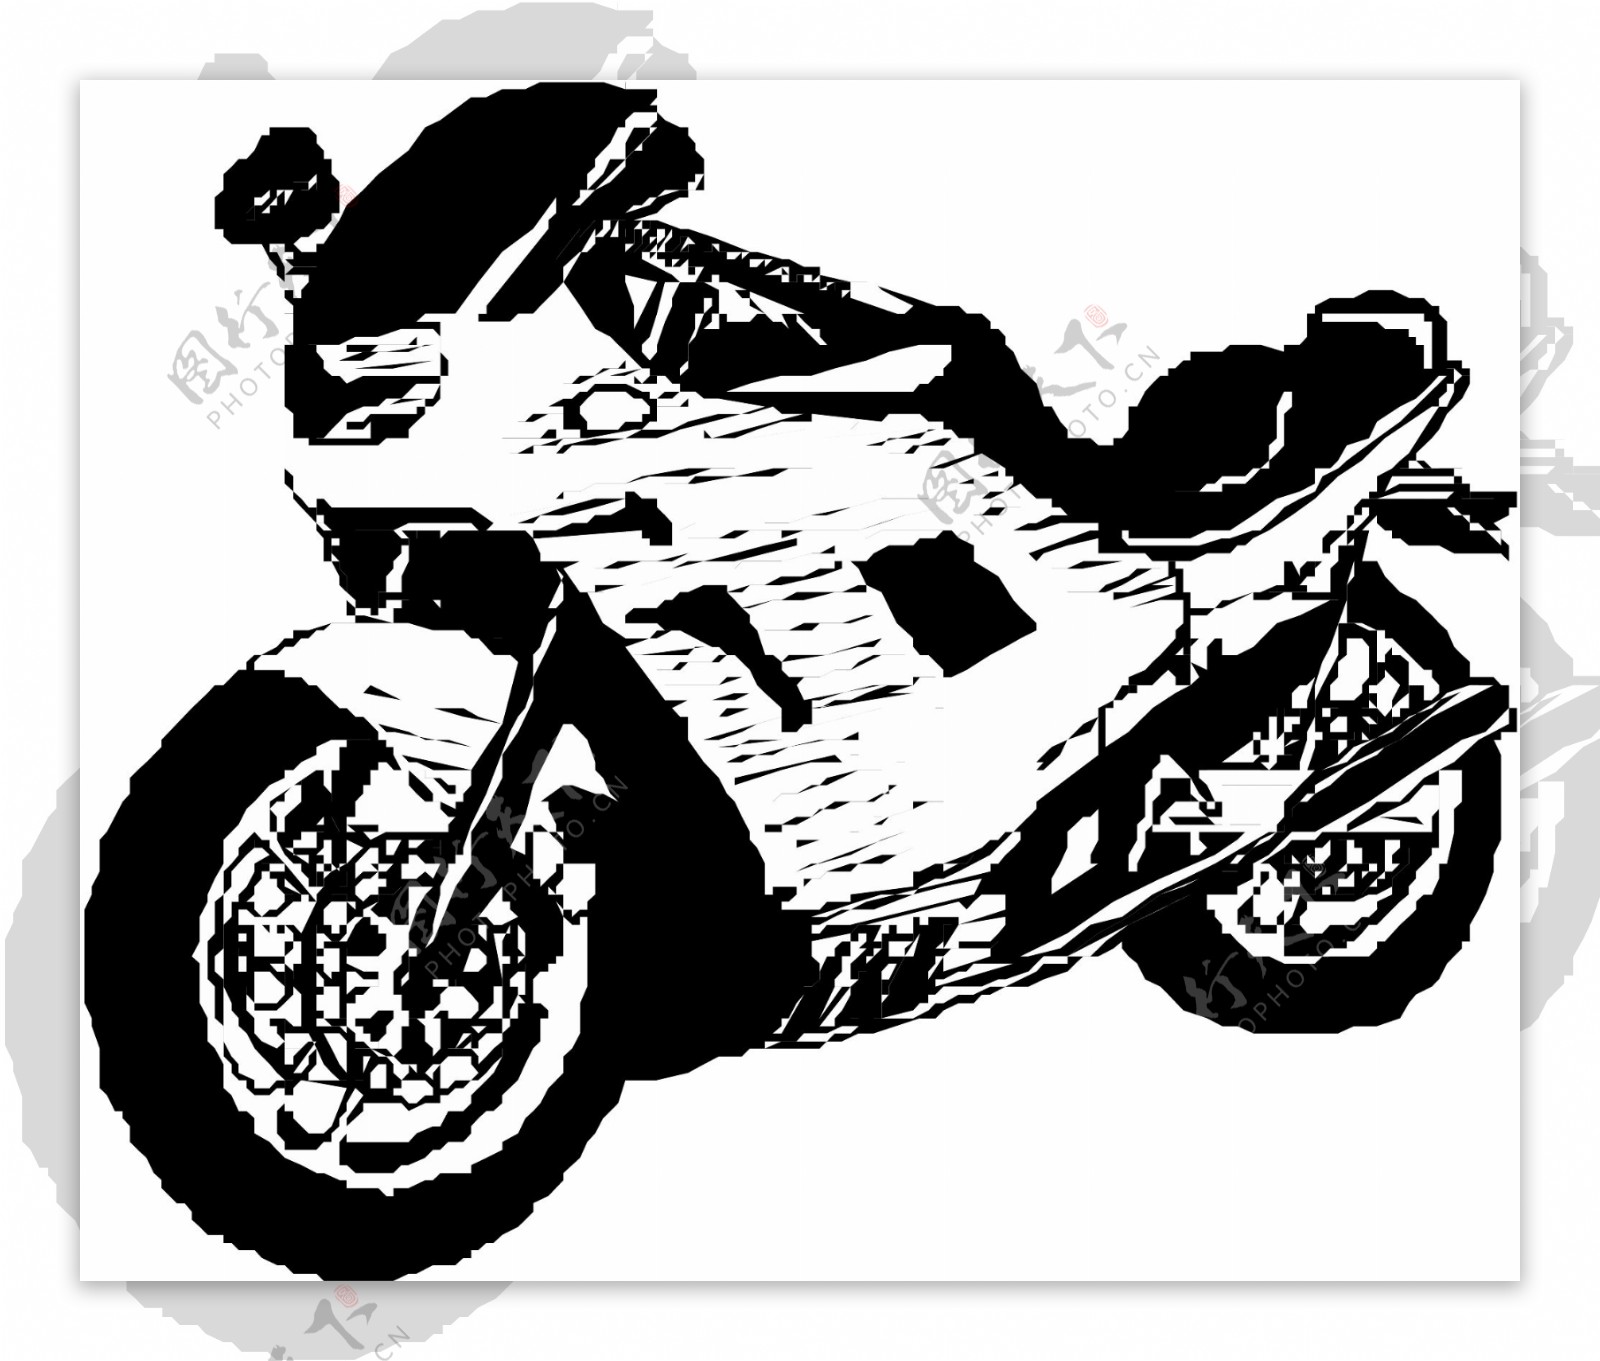 摩托车矢量素材EPS格式0037